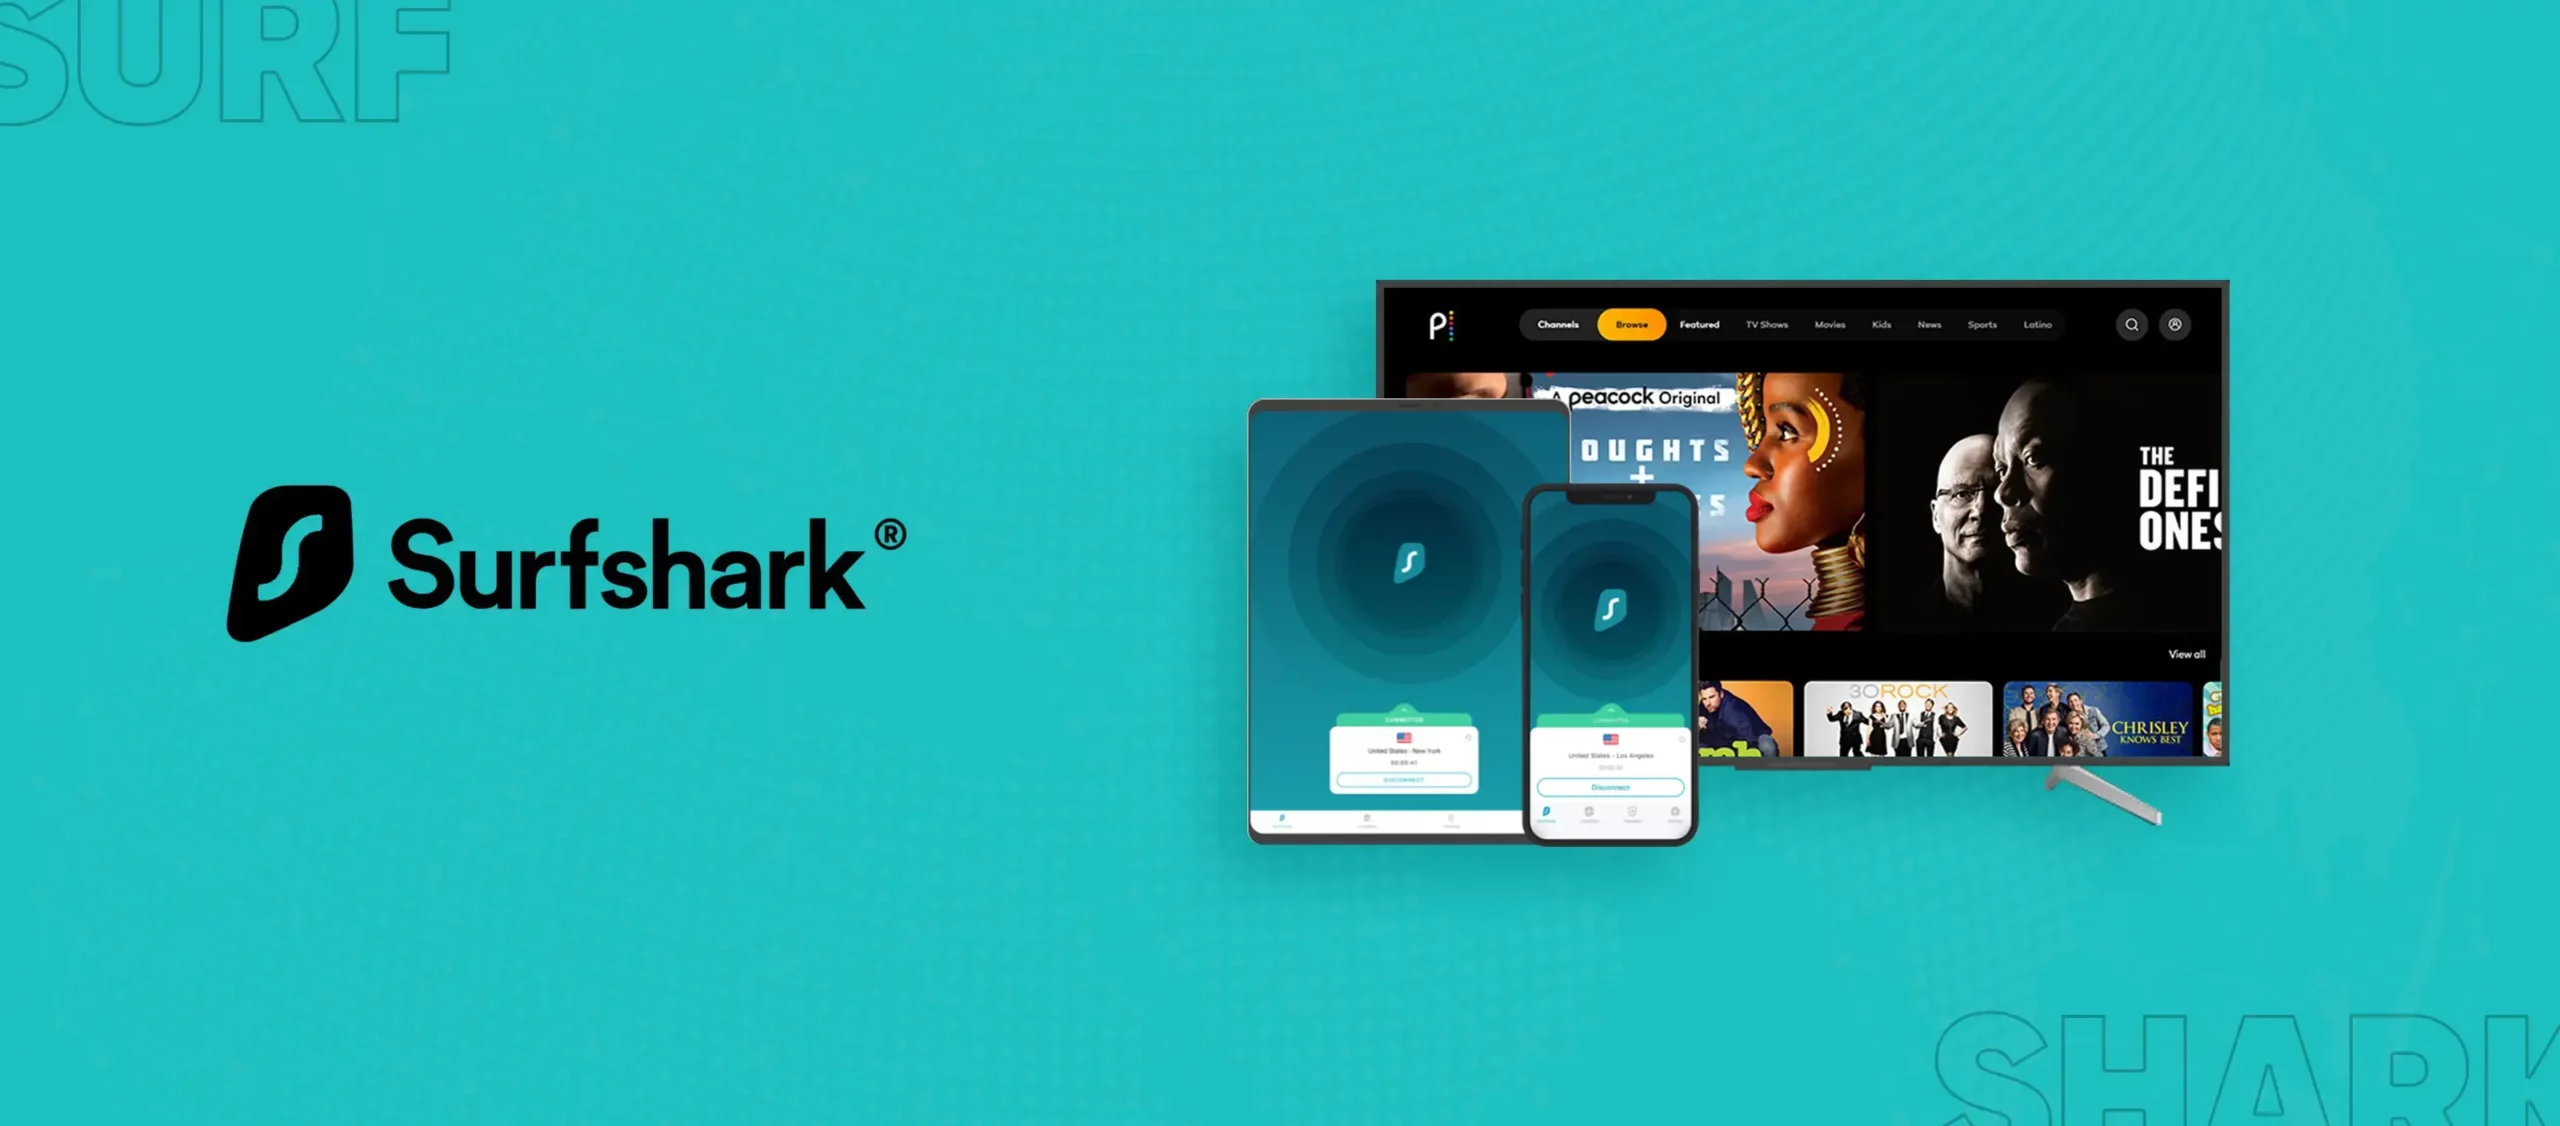  SurfShark-Peacock SurfShark-Peacock es una combinación de dos servicios en línea: SurfShark, un proveedor de servicios de VPN (red privada virtual) y Peacock, un servicio de transmisión de contenido en línea. Juntos, ofrecen una experiencia de navegación segura y acceso a una amplia gama de contenido en línea. 